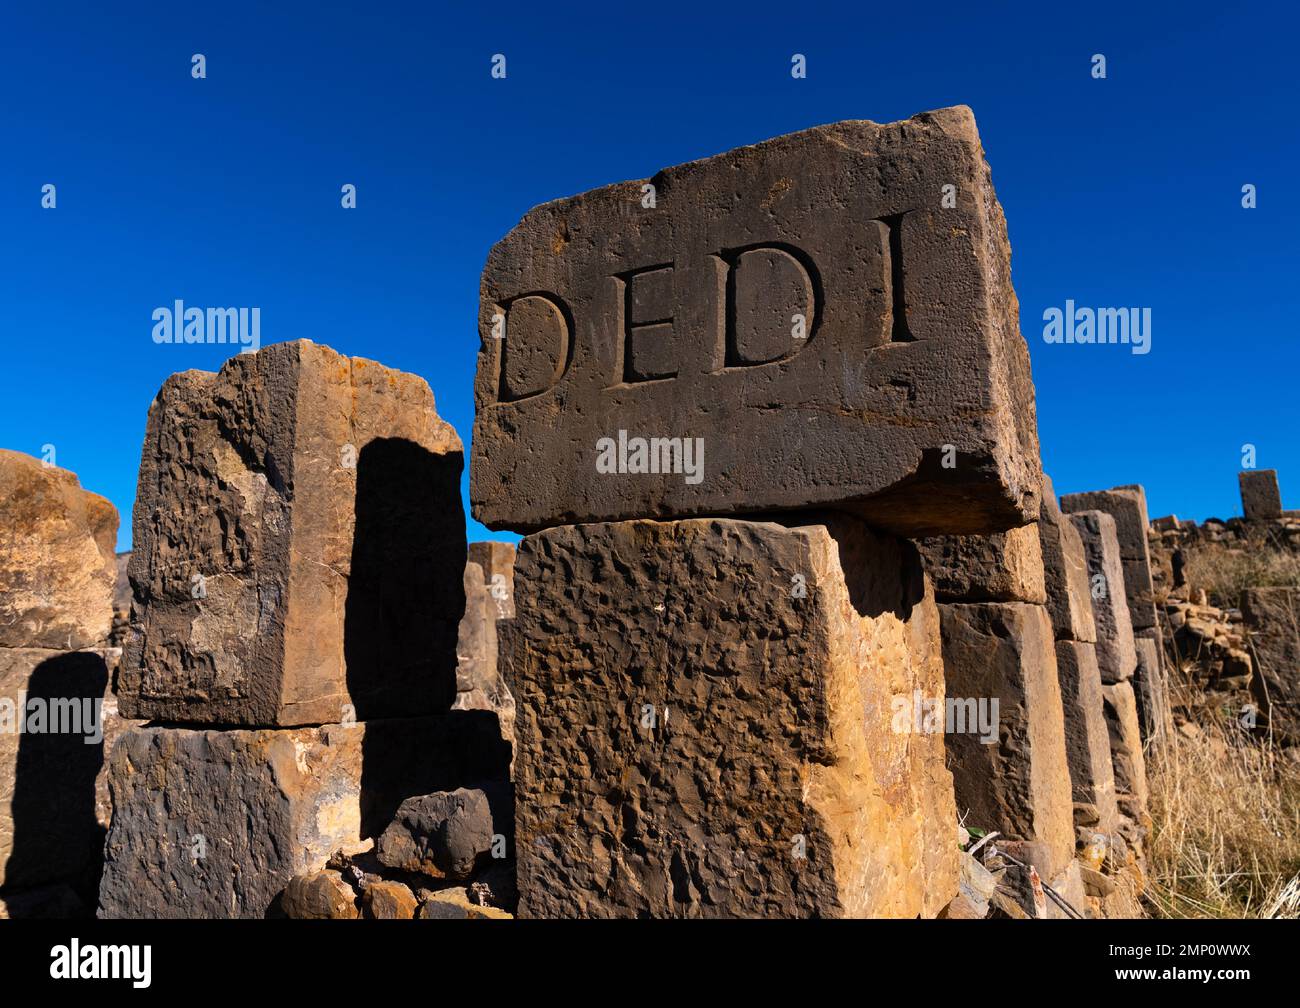 Les ruines romaines de Djemila, Afrique du Nord, Djemila, Algérie Banque D'Images